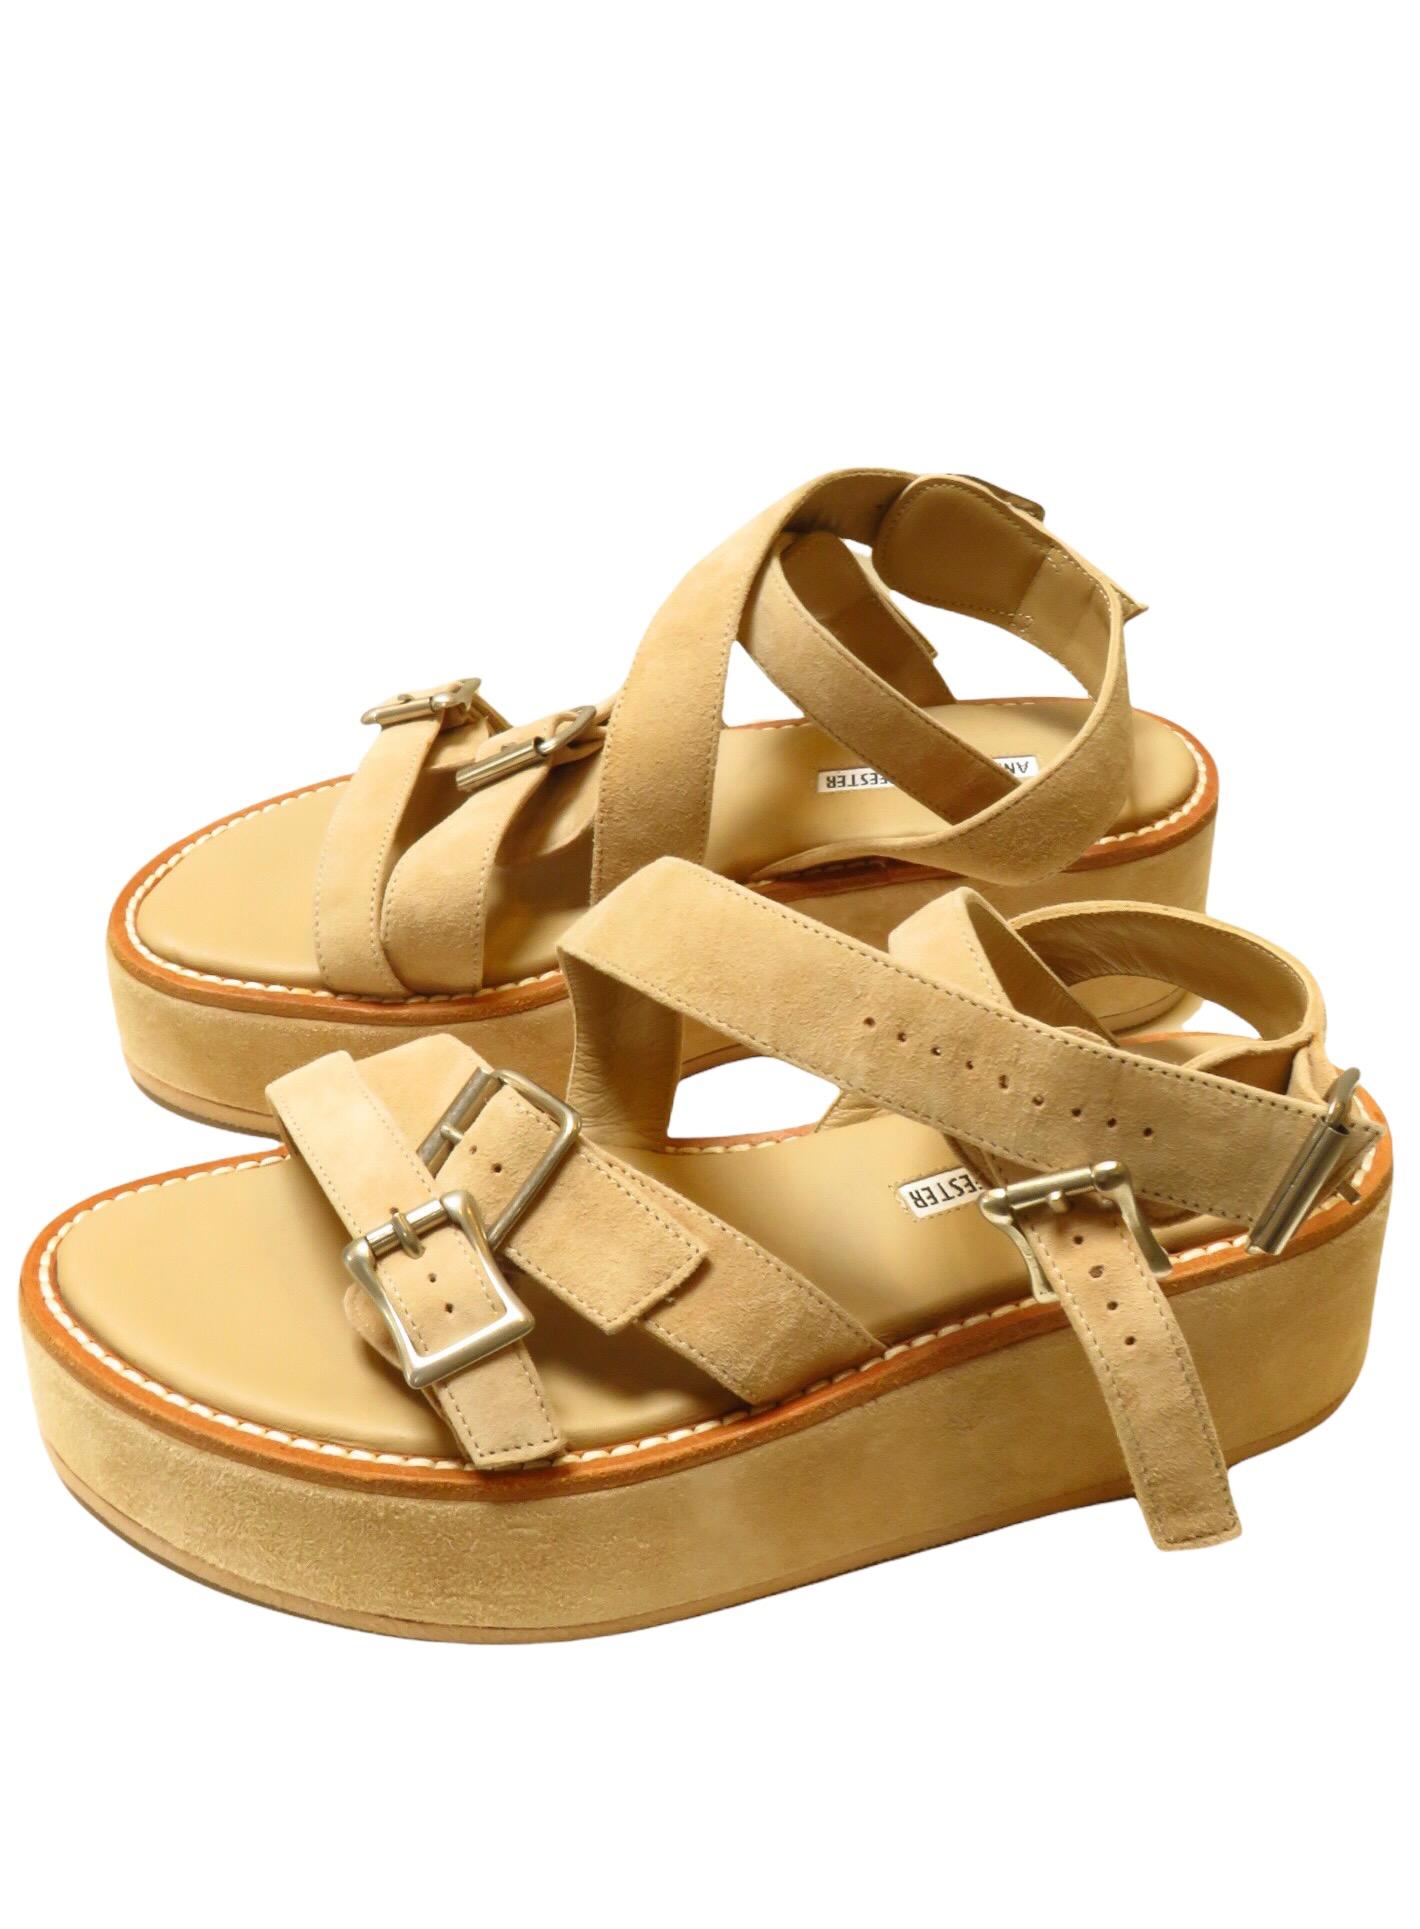 laguna shore sandal for women in beige